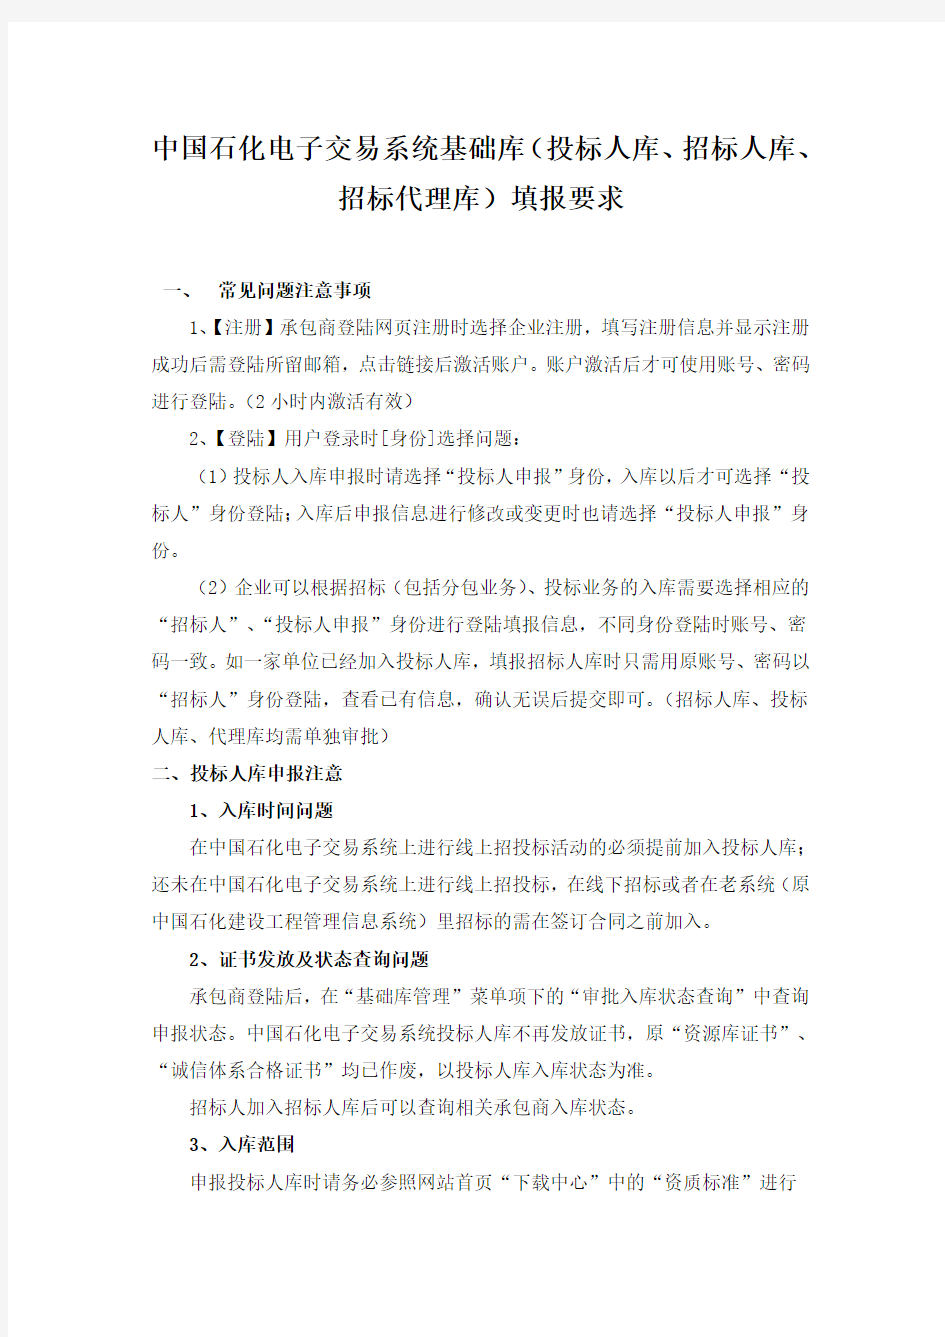 中国石化电子交易系统基础库(投标人库、招标人库、招标代理库)填报要求